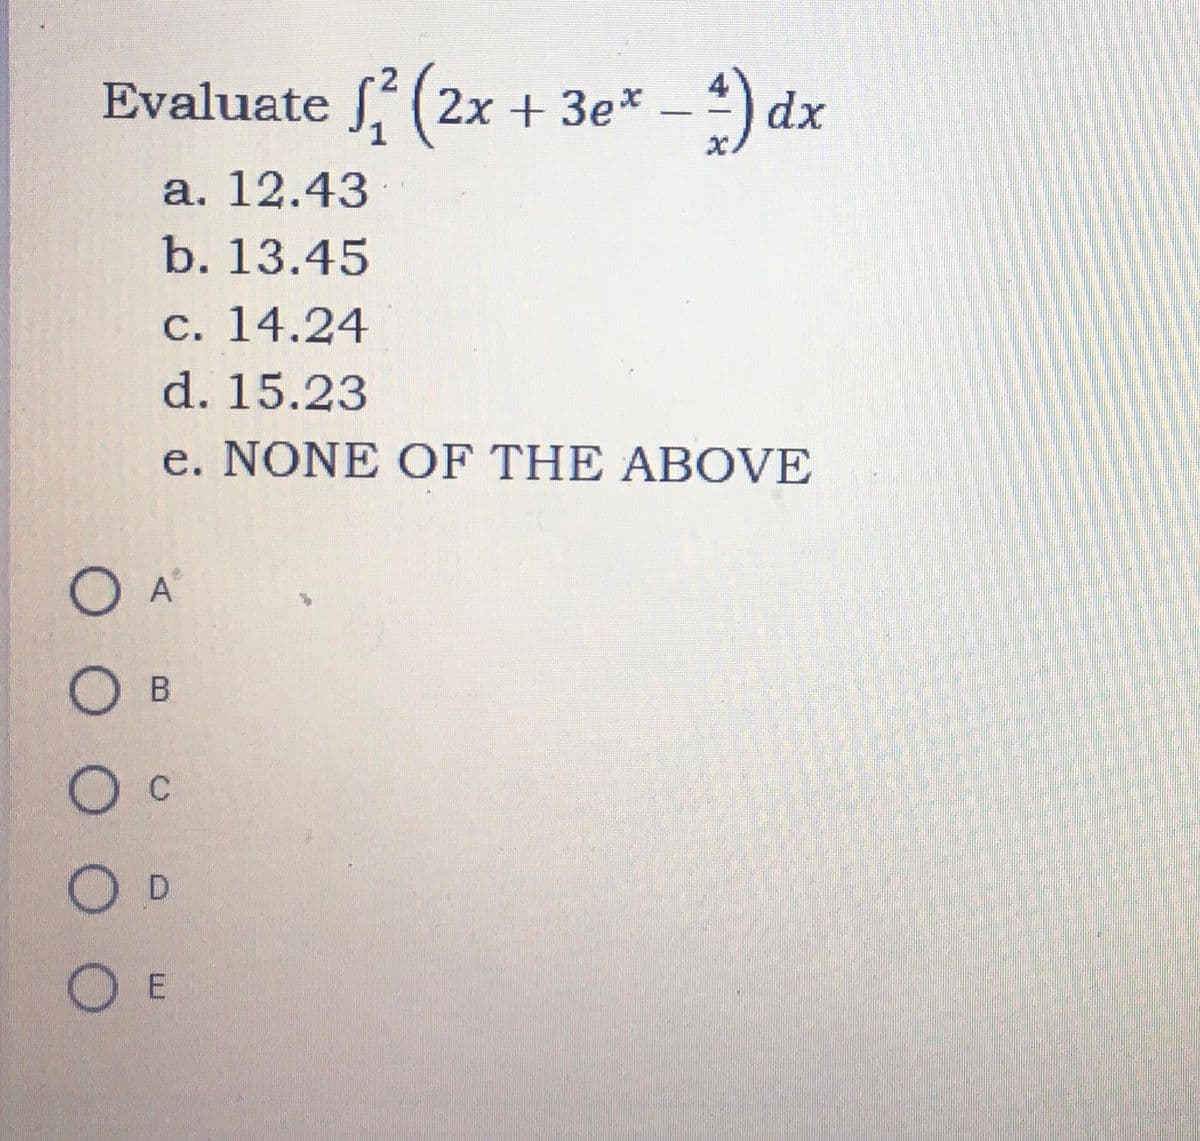 Evaluate 2(2x + 3e* - 4) dx
a. 12.43
b. 13.45
с. 14.24
d. 15.23
e. NONE OF THE ABOVE
О А
Ов
Ос
O D
O E
0 000